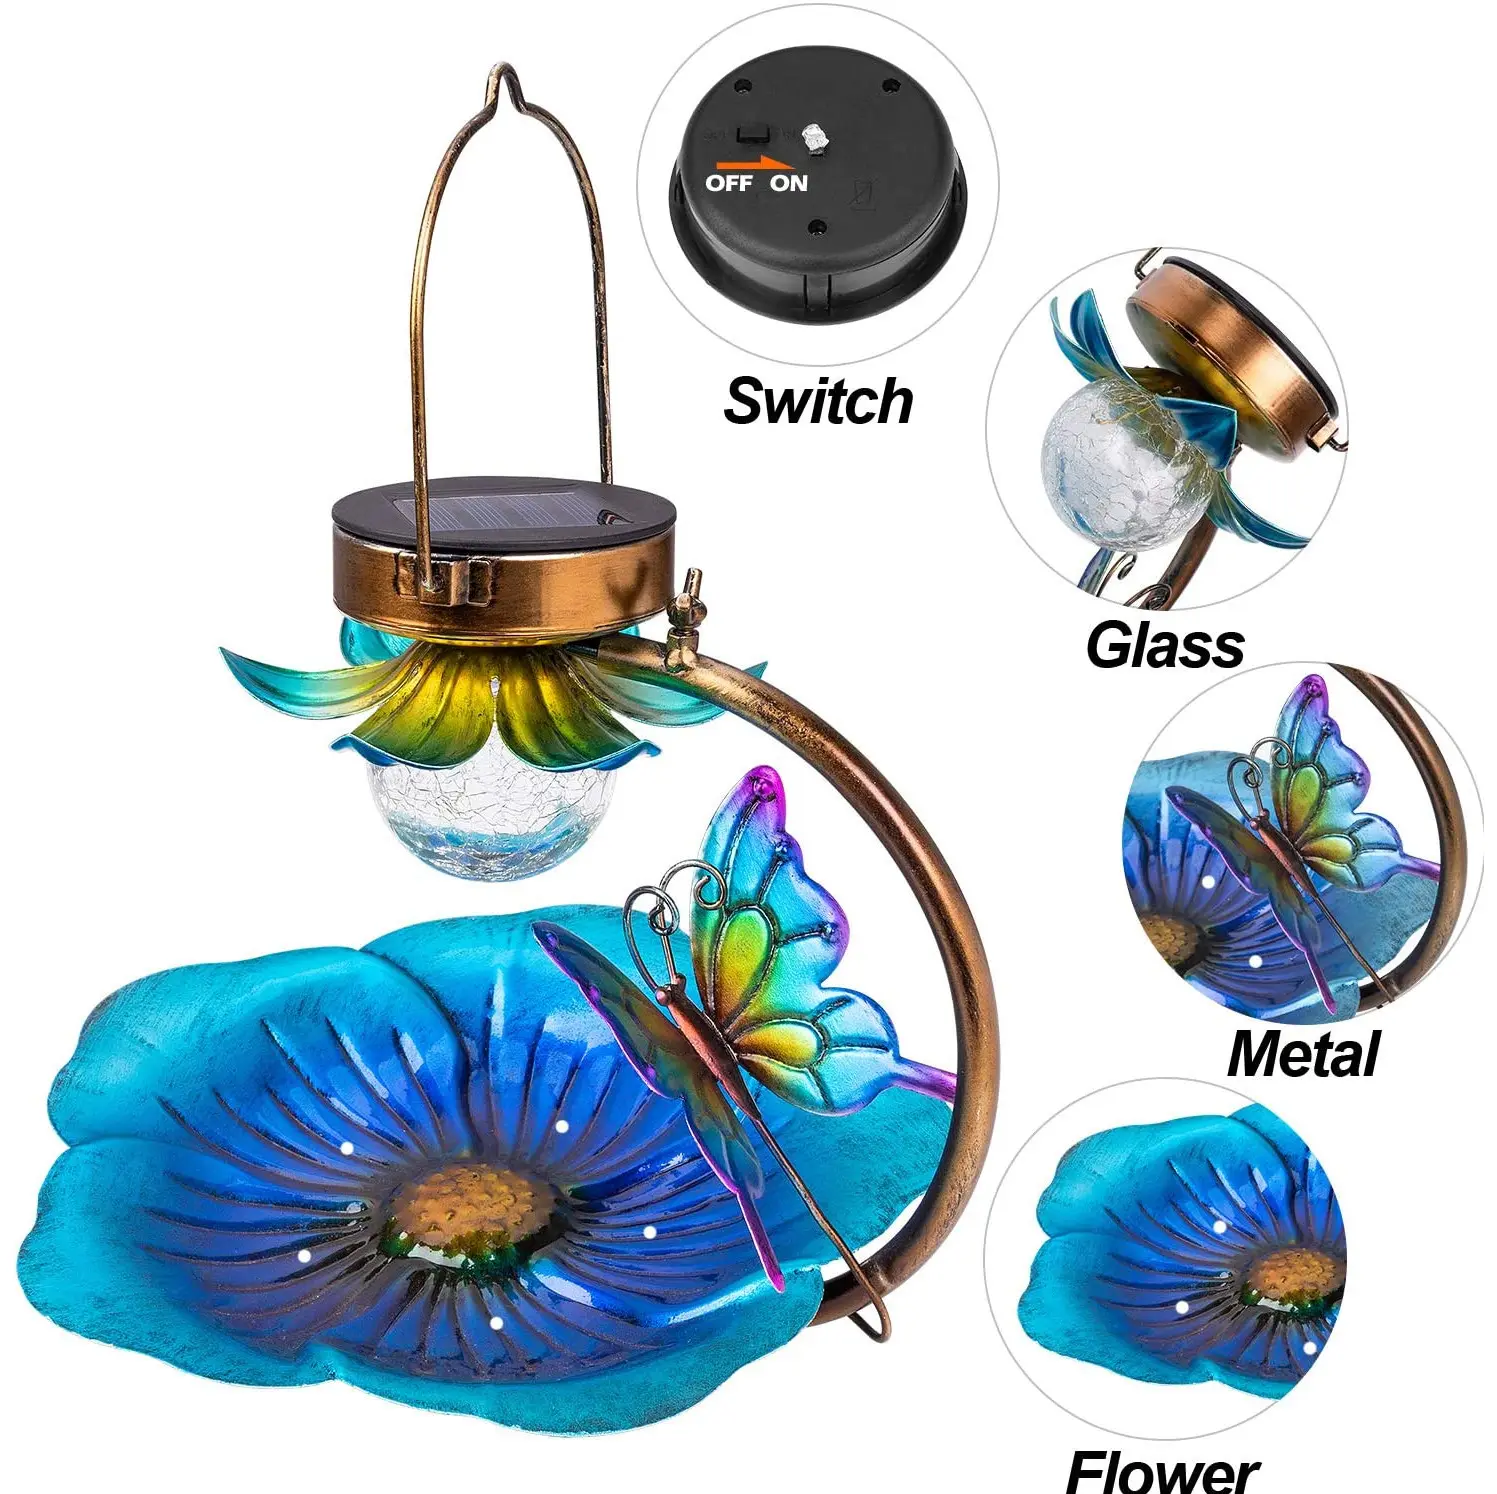 Kuş banyosu çiçek şeklinde açık bahçe güneş lambası asılı avlu kuş besleyici gece ışıkları kuş besleyici bahçe süs